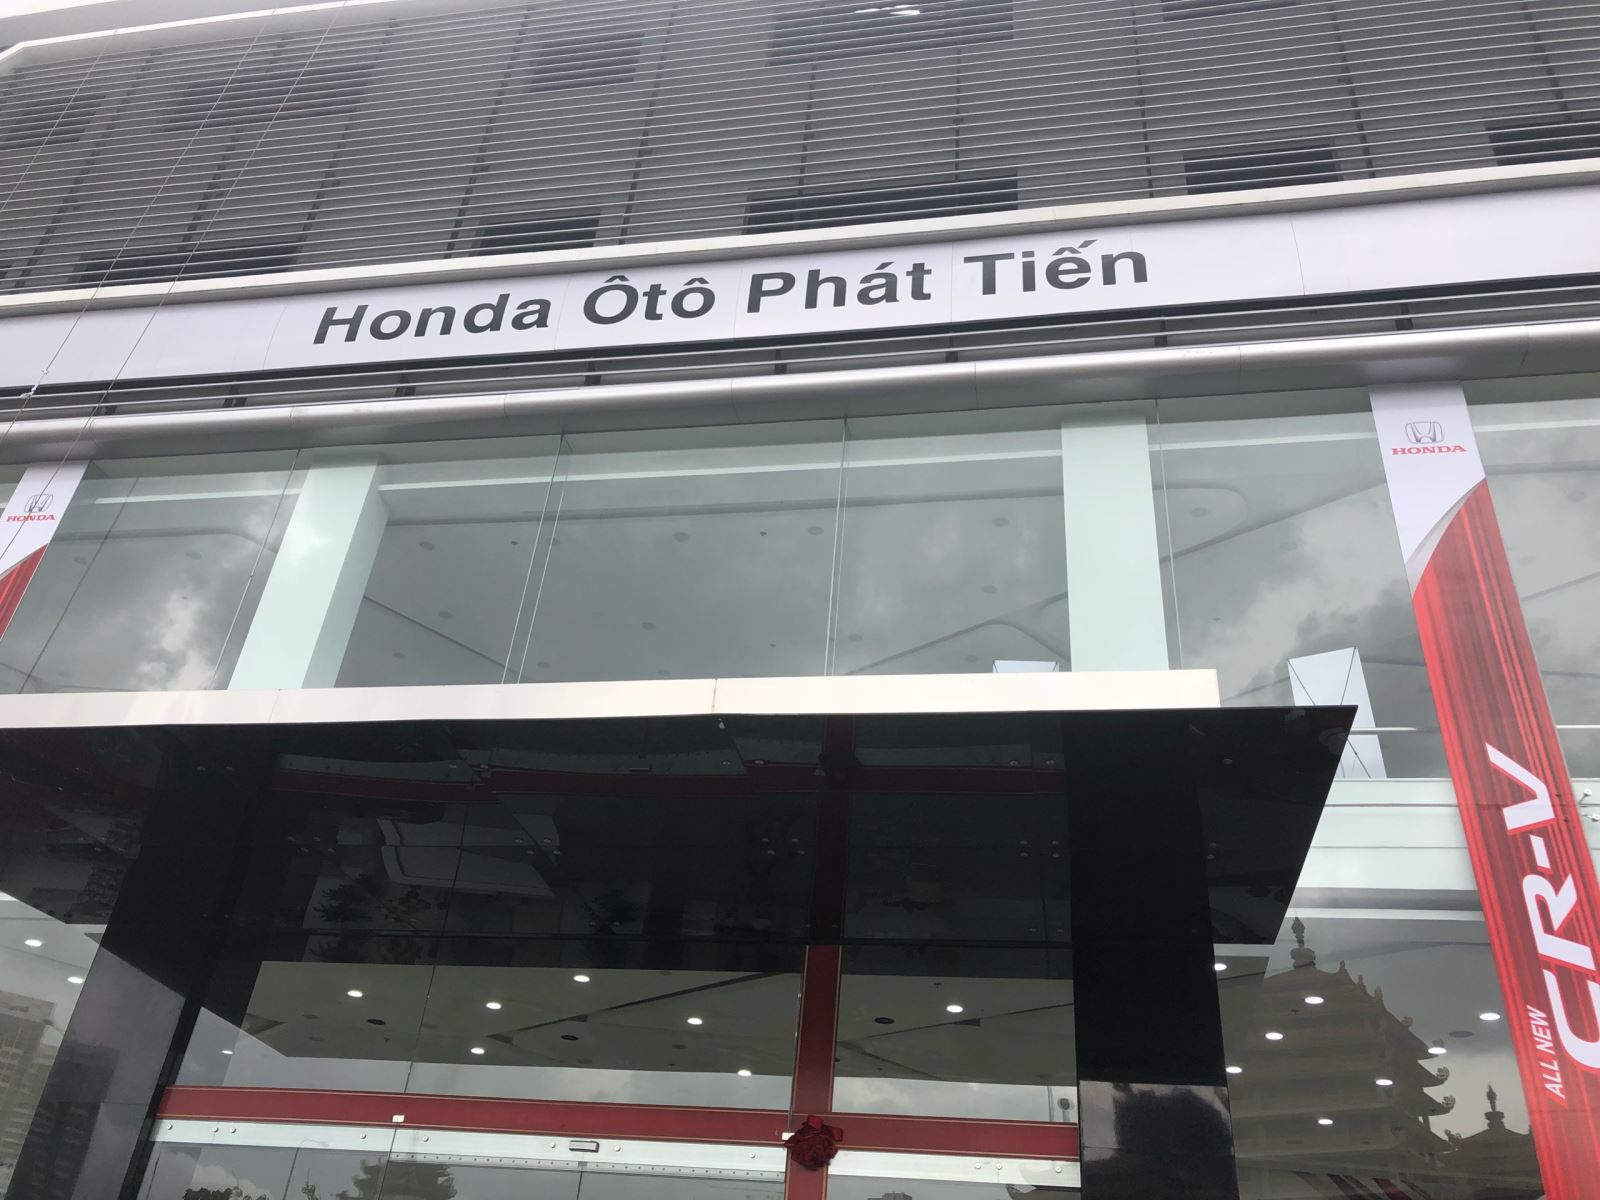 Trung tâm sửa chữa Honda Sài Gòn, trung tâm dịch vụ Honda Sài gòn, trung tâm bảo hành Honda Sài Gòn - Ảnh 3